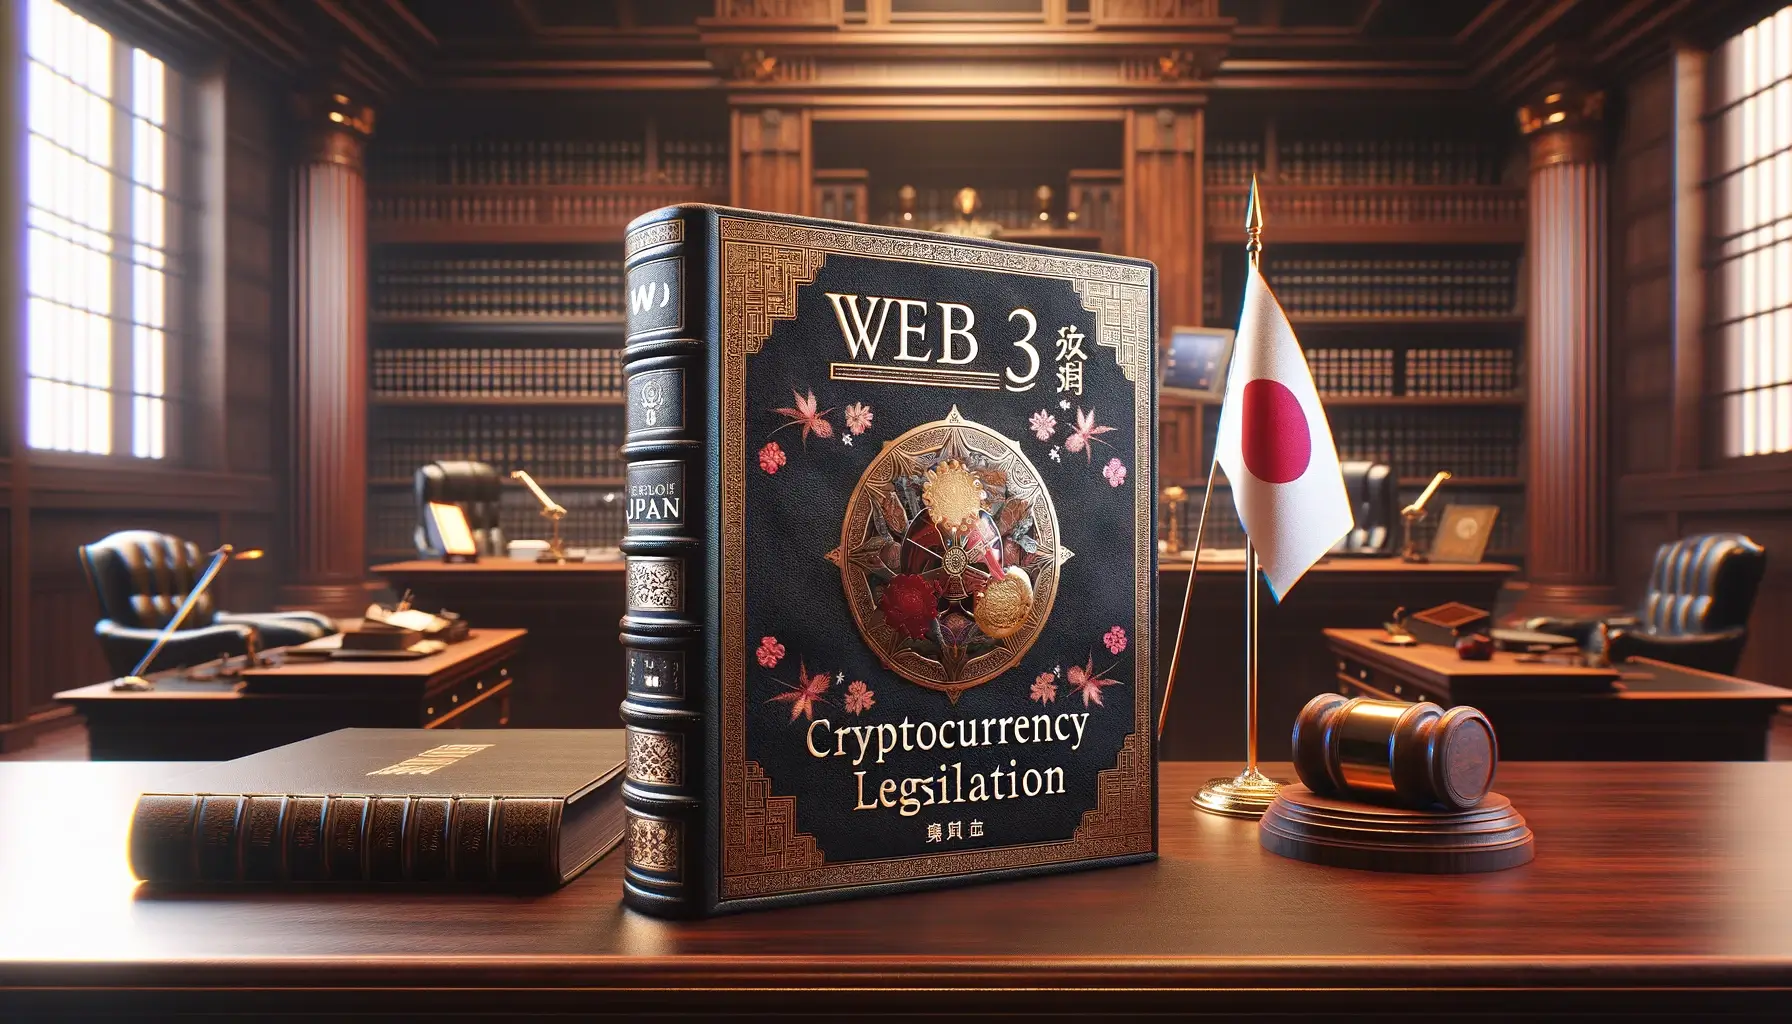 Japan Pioneers Web3 Innovation with Landmark Cryptocurrency Legislation